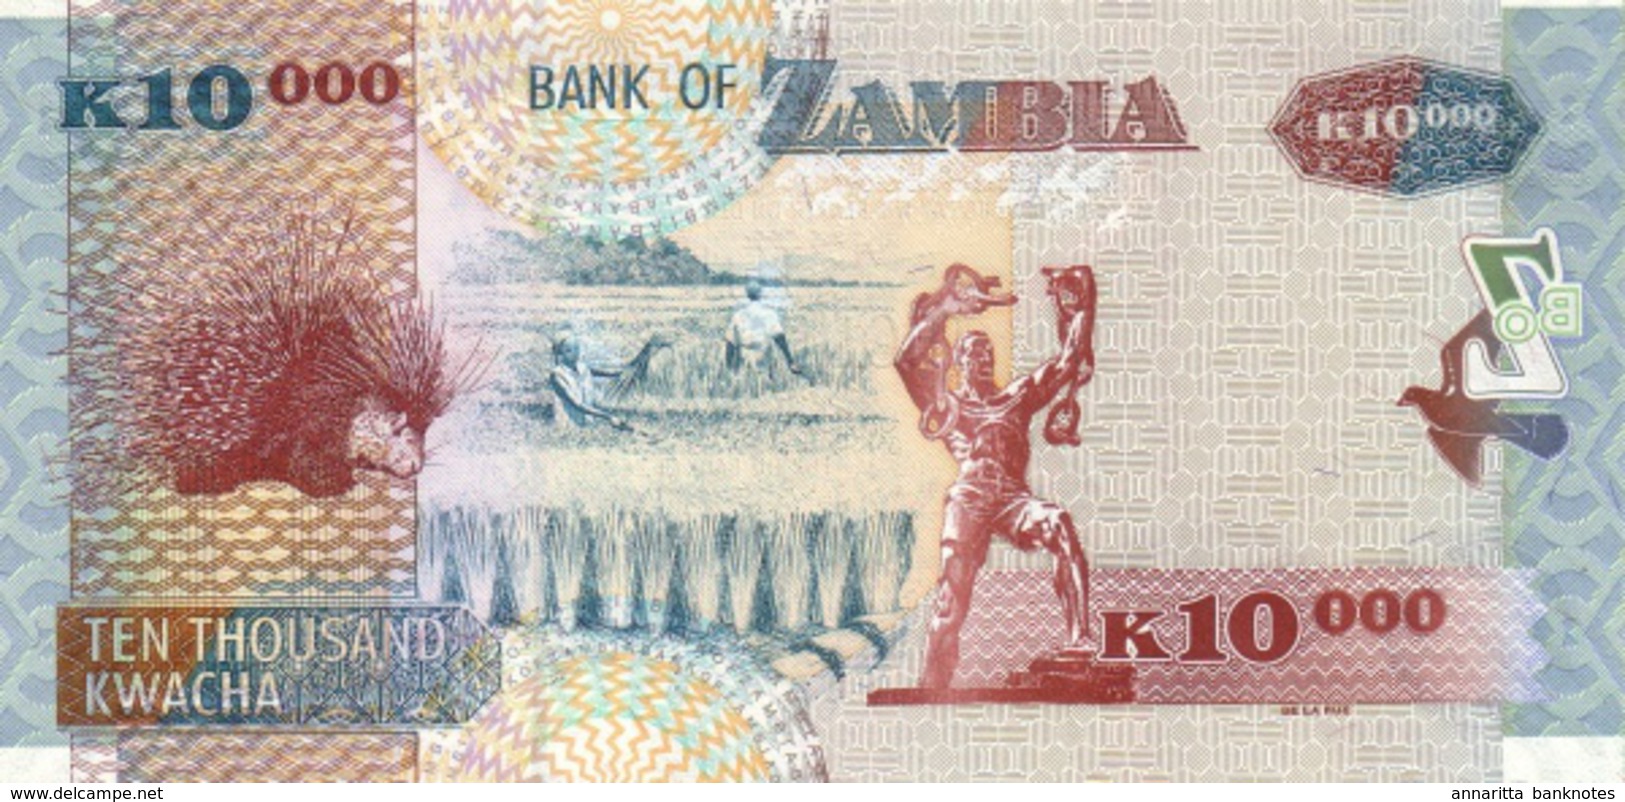 ZAMBIA 10000 KWACHA 2003 P-46a UNC RARE [ZM148a] - Zambia